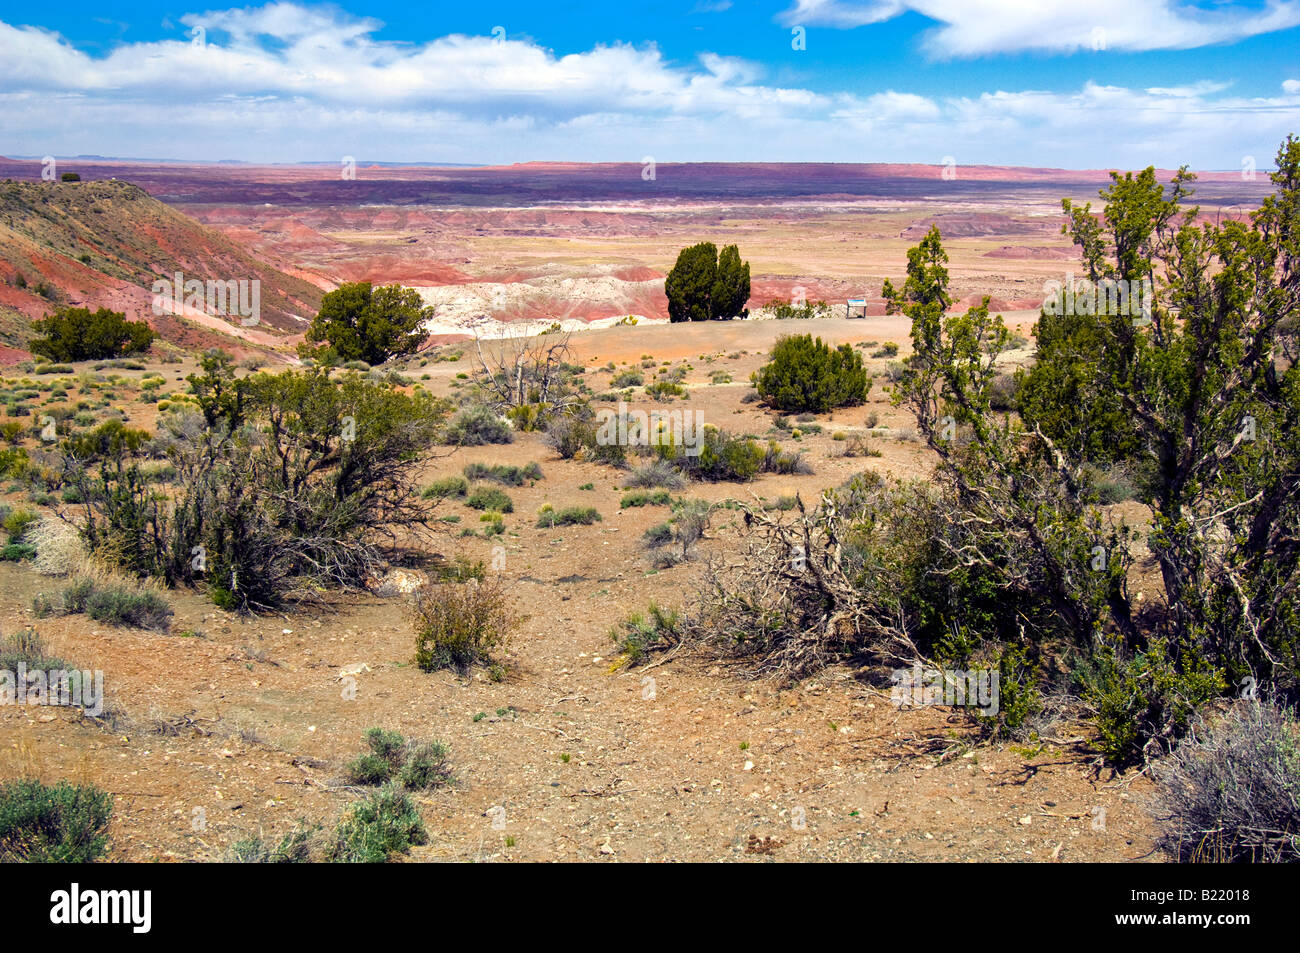 La vegetación en el desierto pintado zona del Parque Nacional petrificados en Arizona Foto de stock